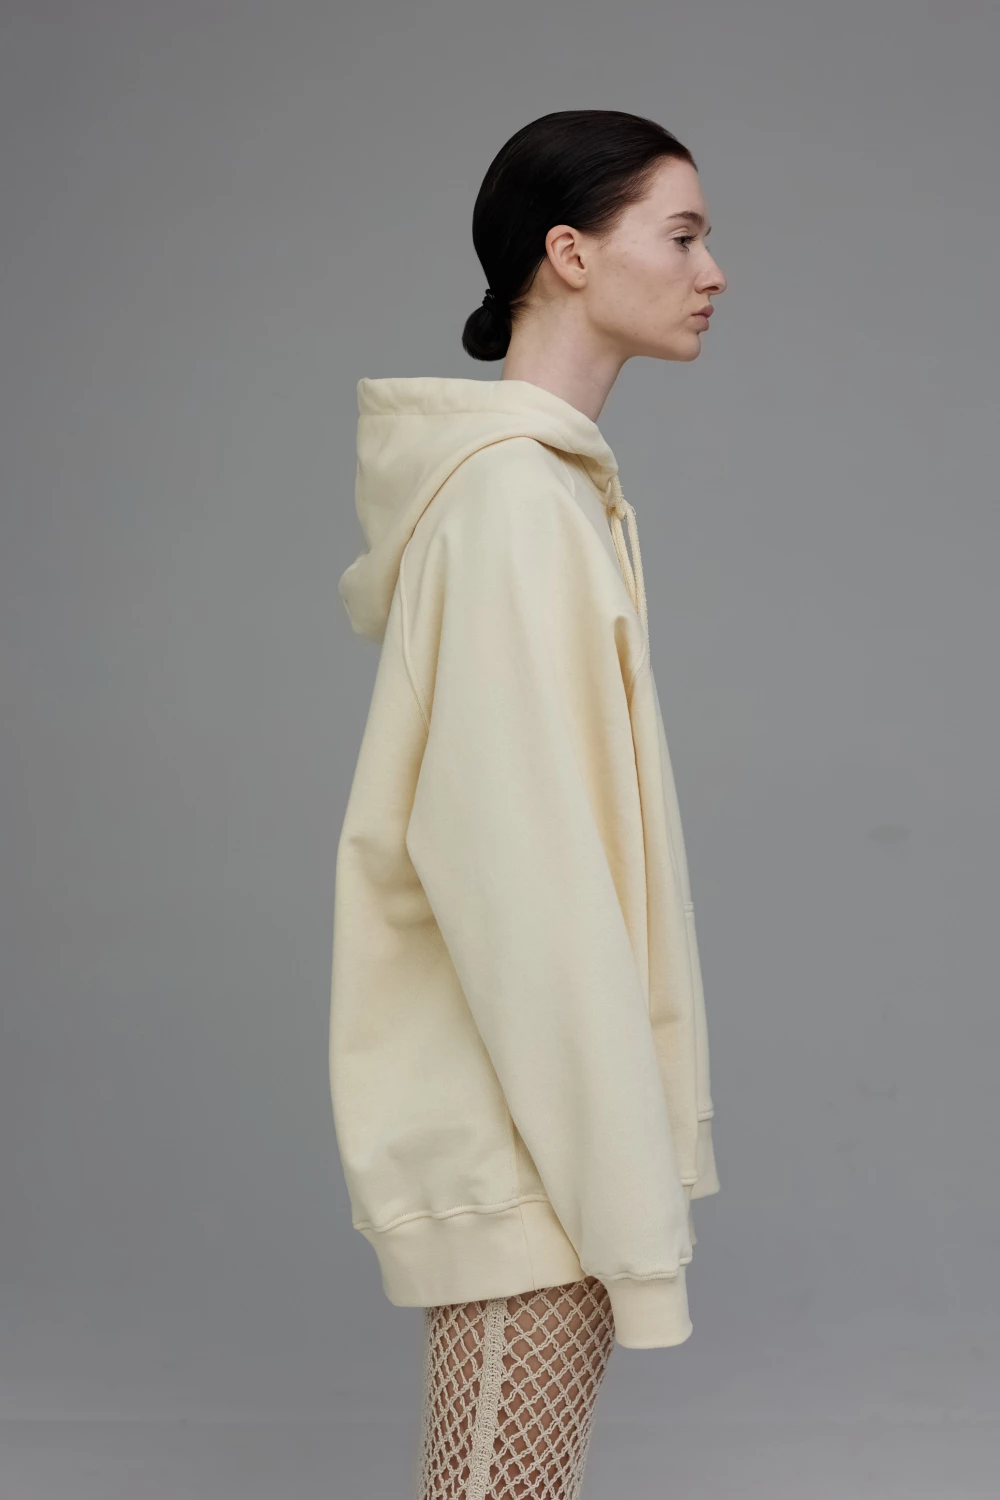 hoodie "under pose" in vanilla color